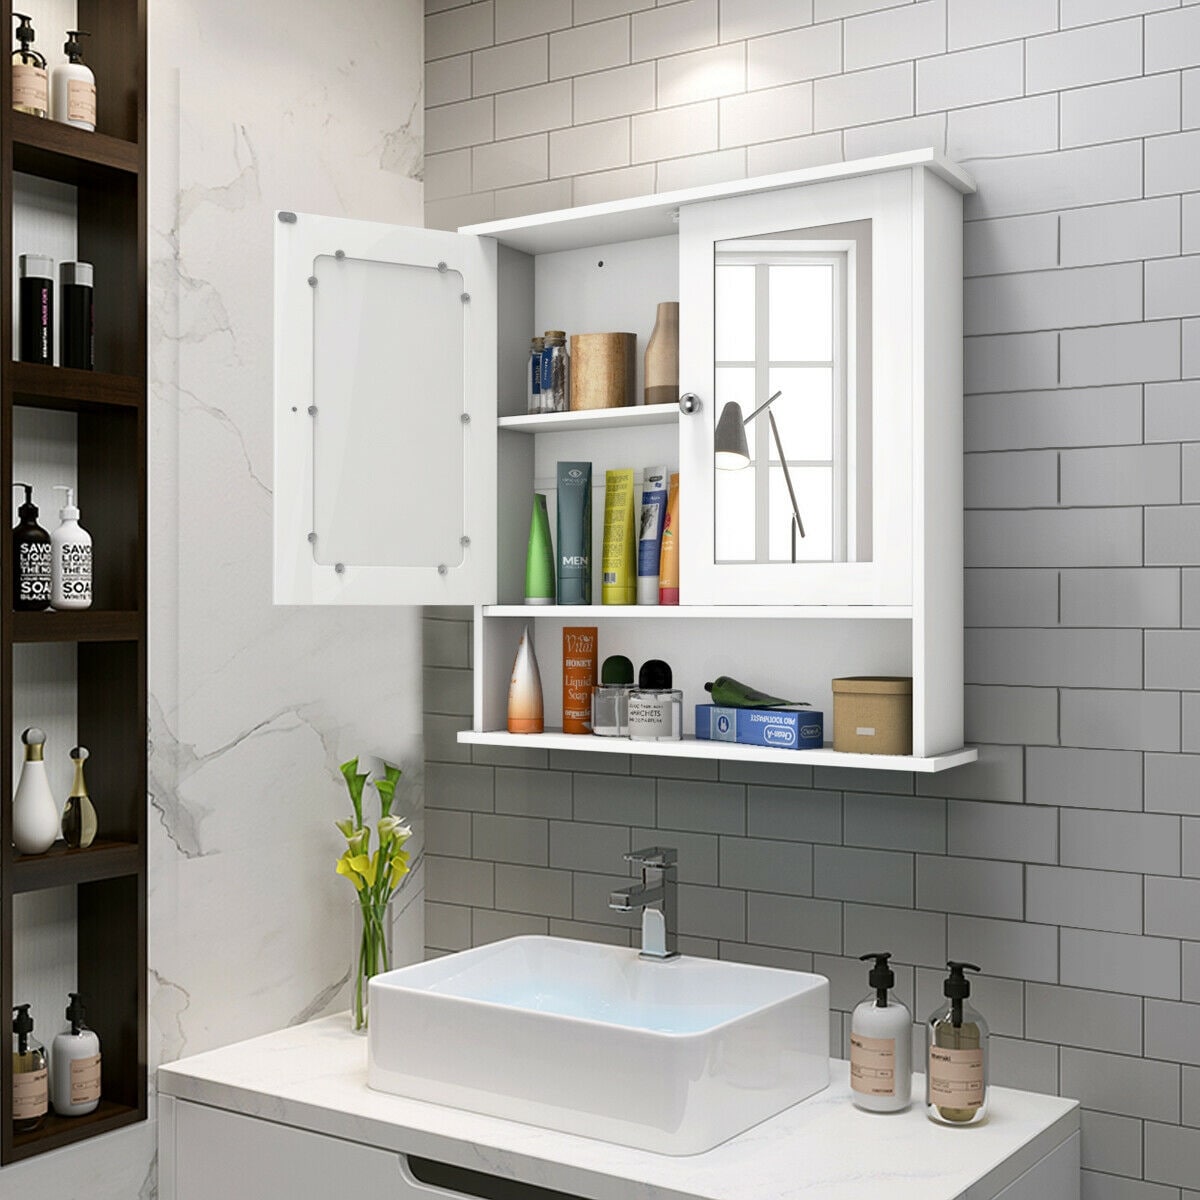 Wooden Double Mirror Door Indoor Wall Mountable White Bathroom Cabinet Shelf New 